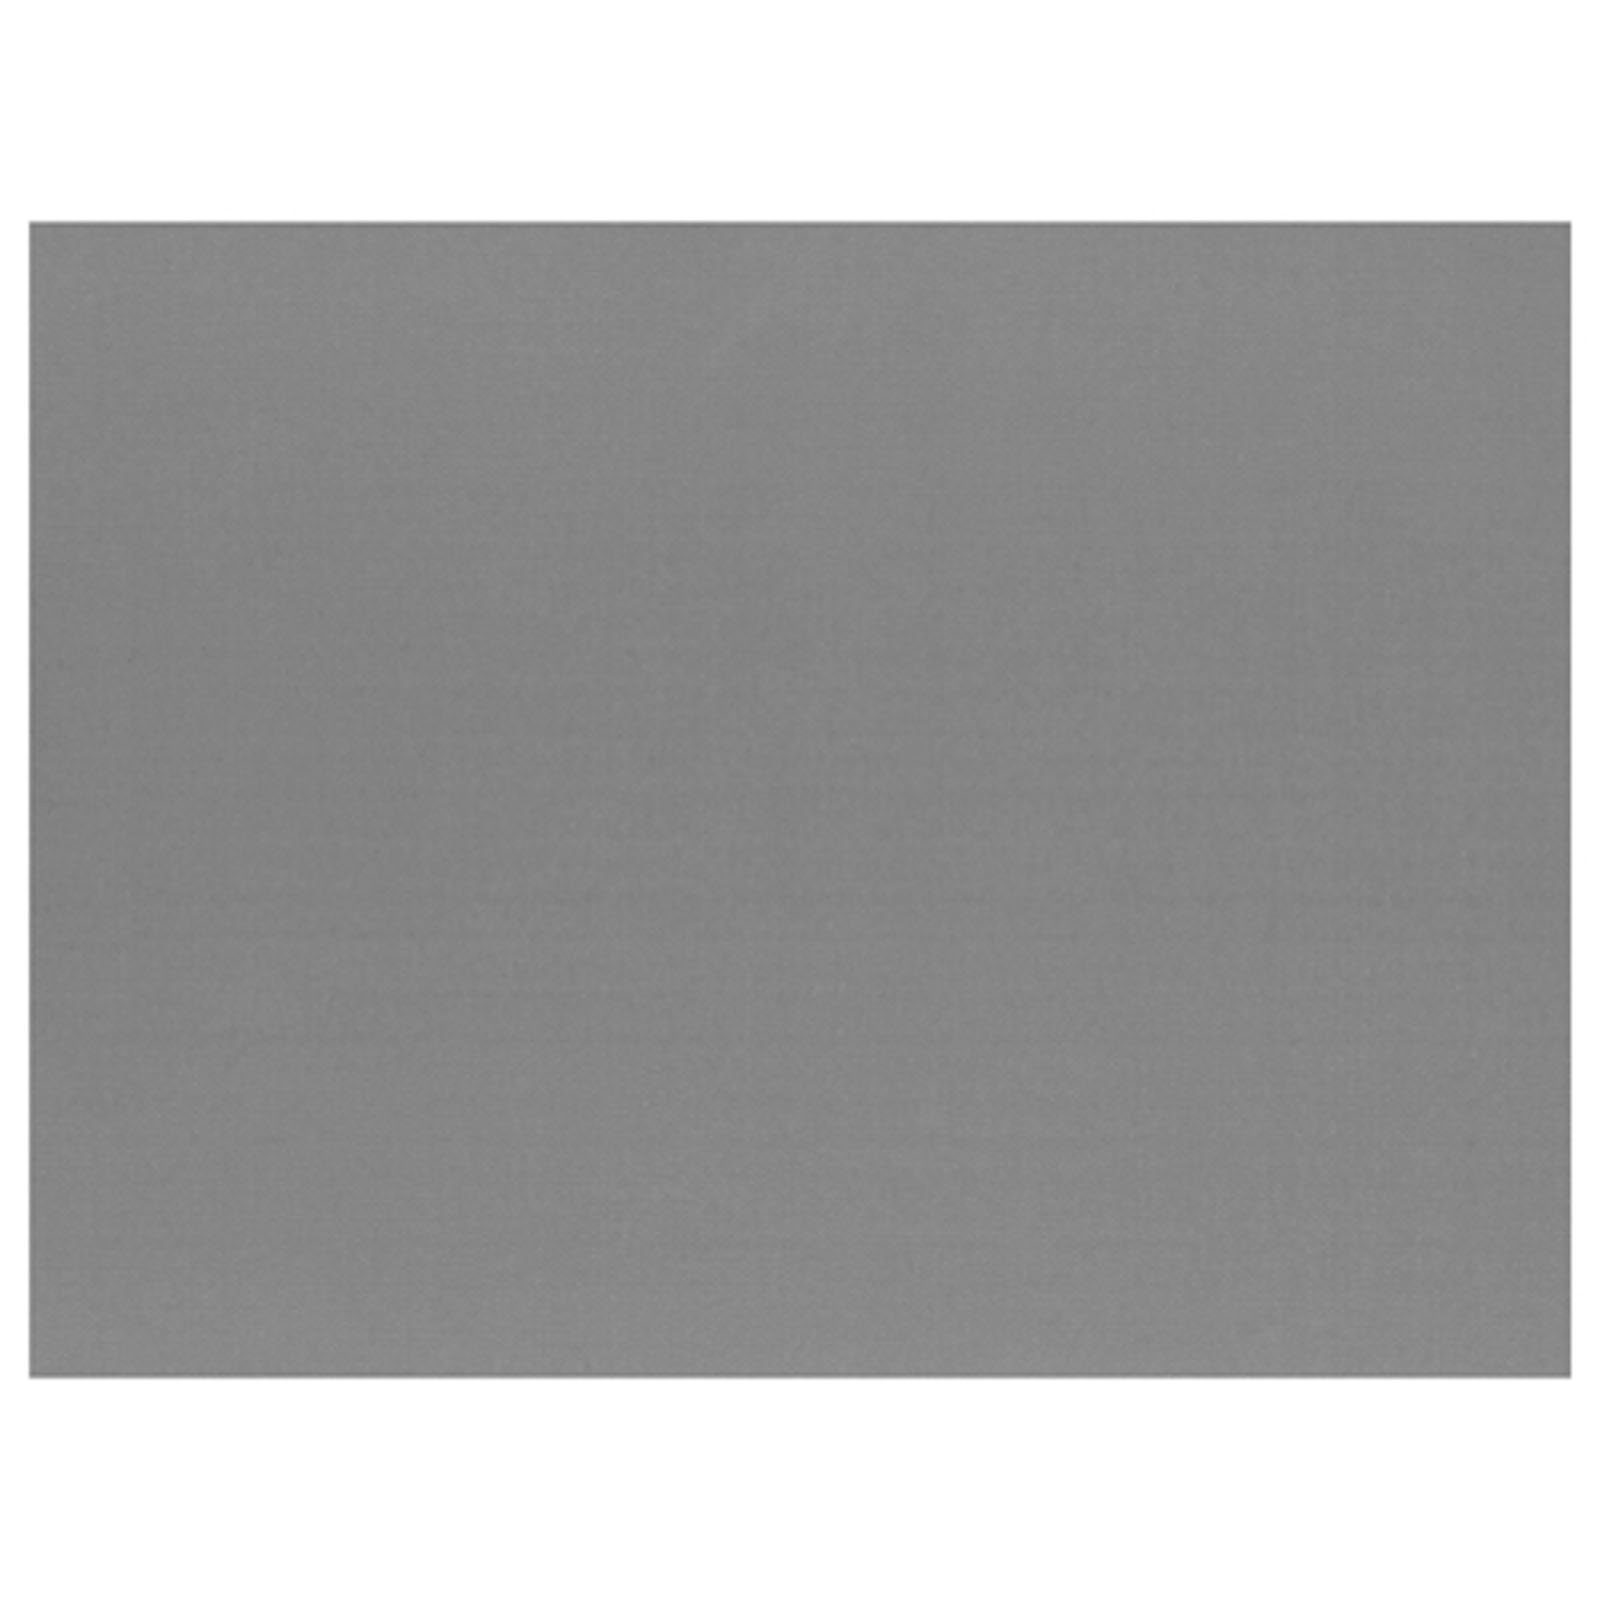 PAPSTAR Einwegschale 1000 Stück Papier Tischsets, grau 30 x 40 cm